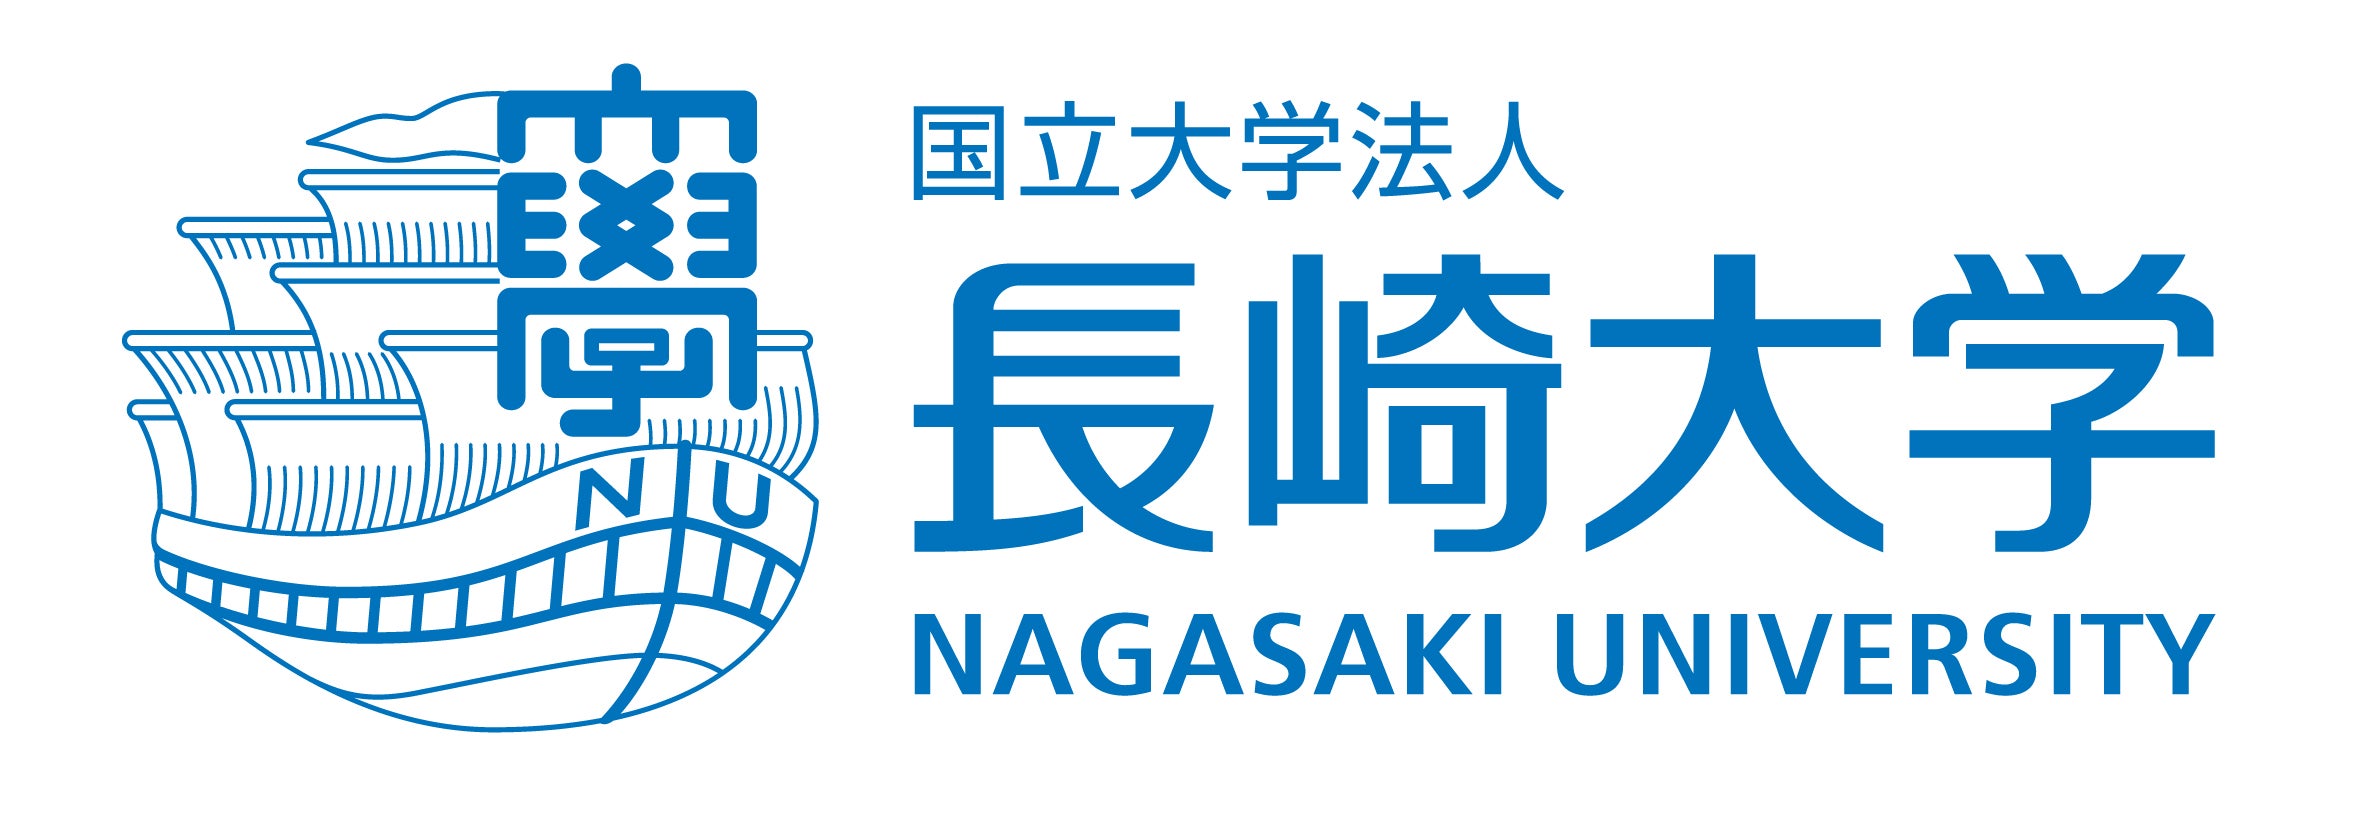 長崎大学 ロゴ